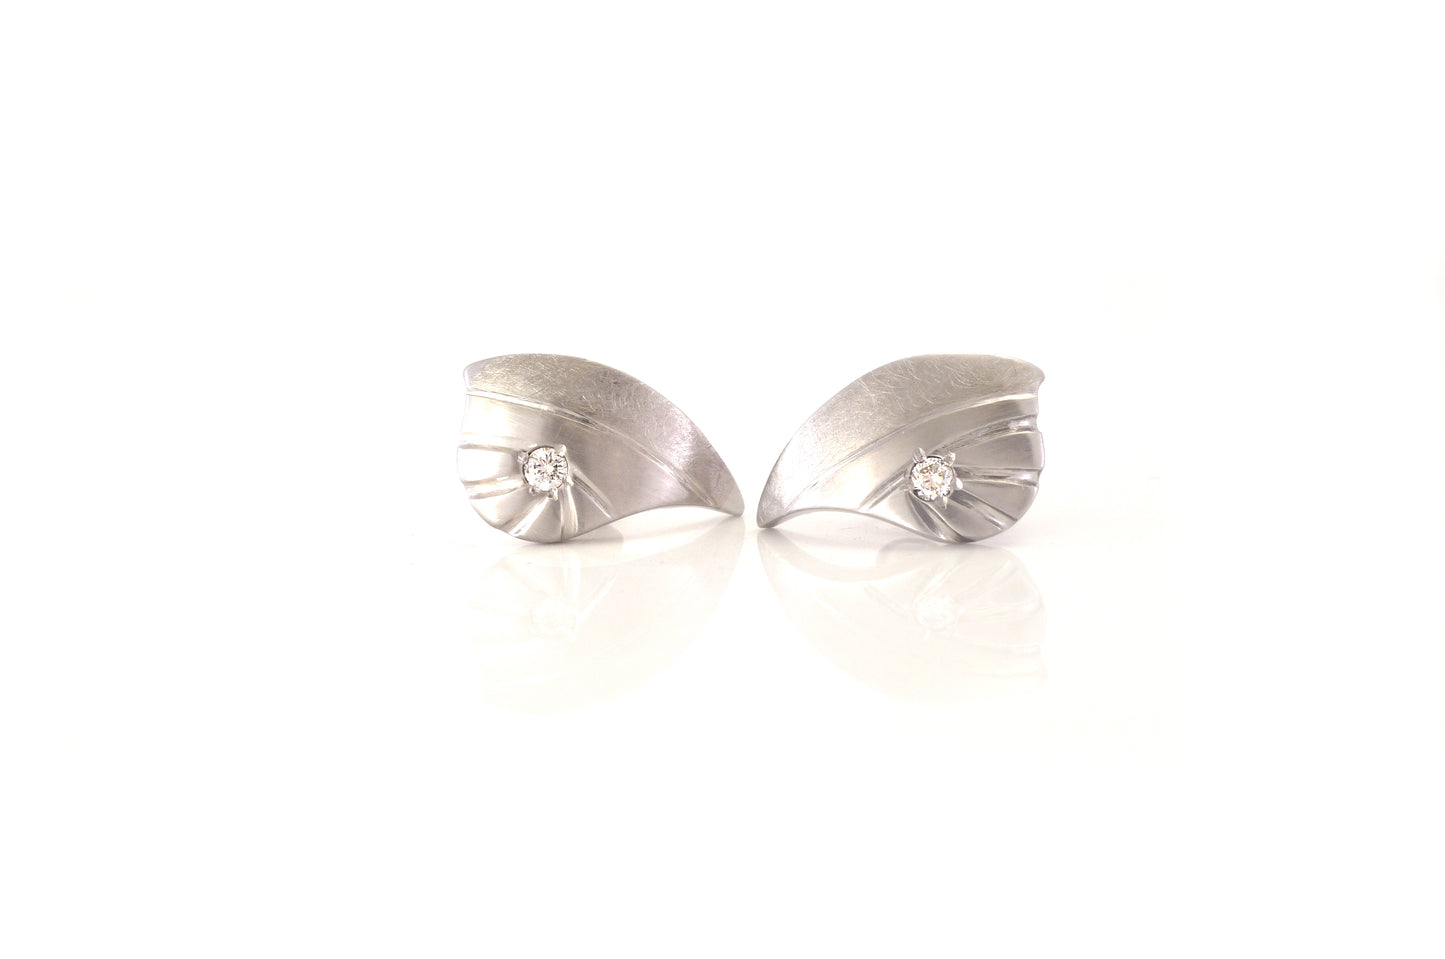 Diamond earrings by ZEALmetal in Kingston ON Canada